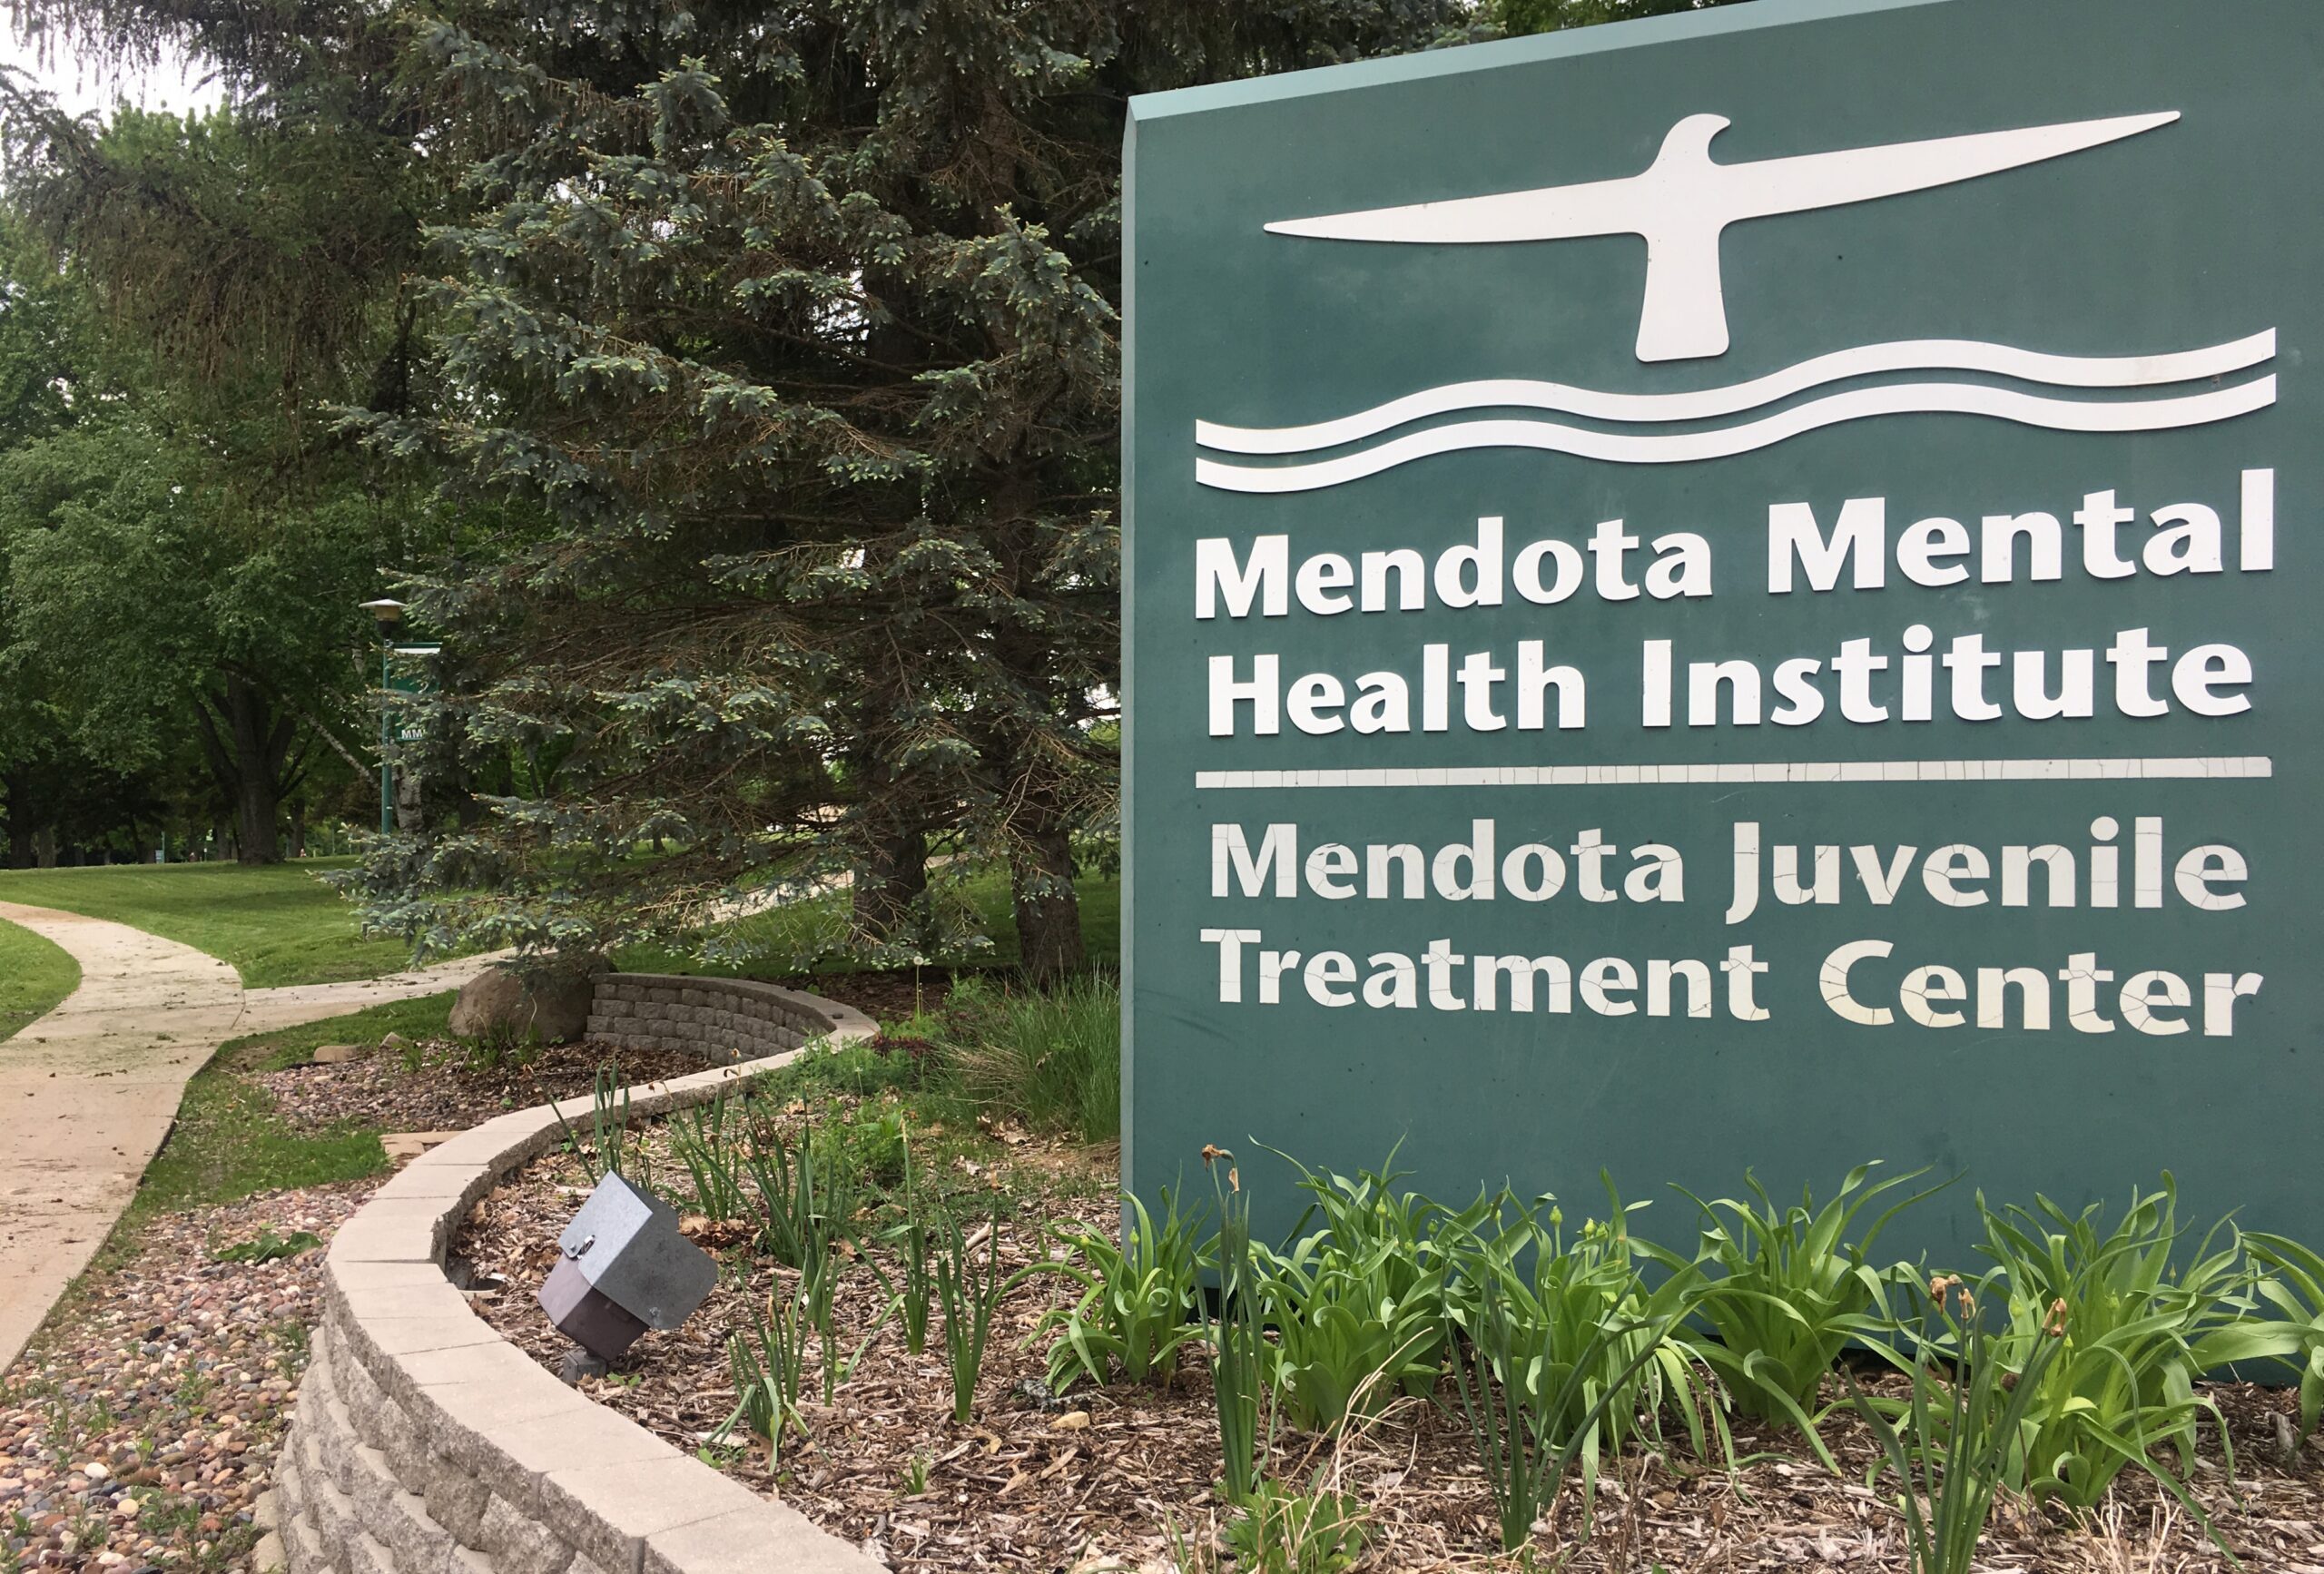 Mendota Juvenile Treatment Center